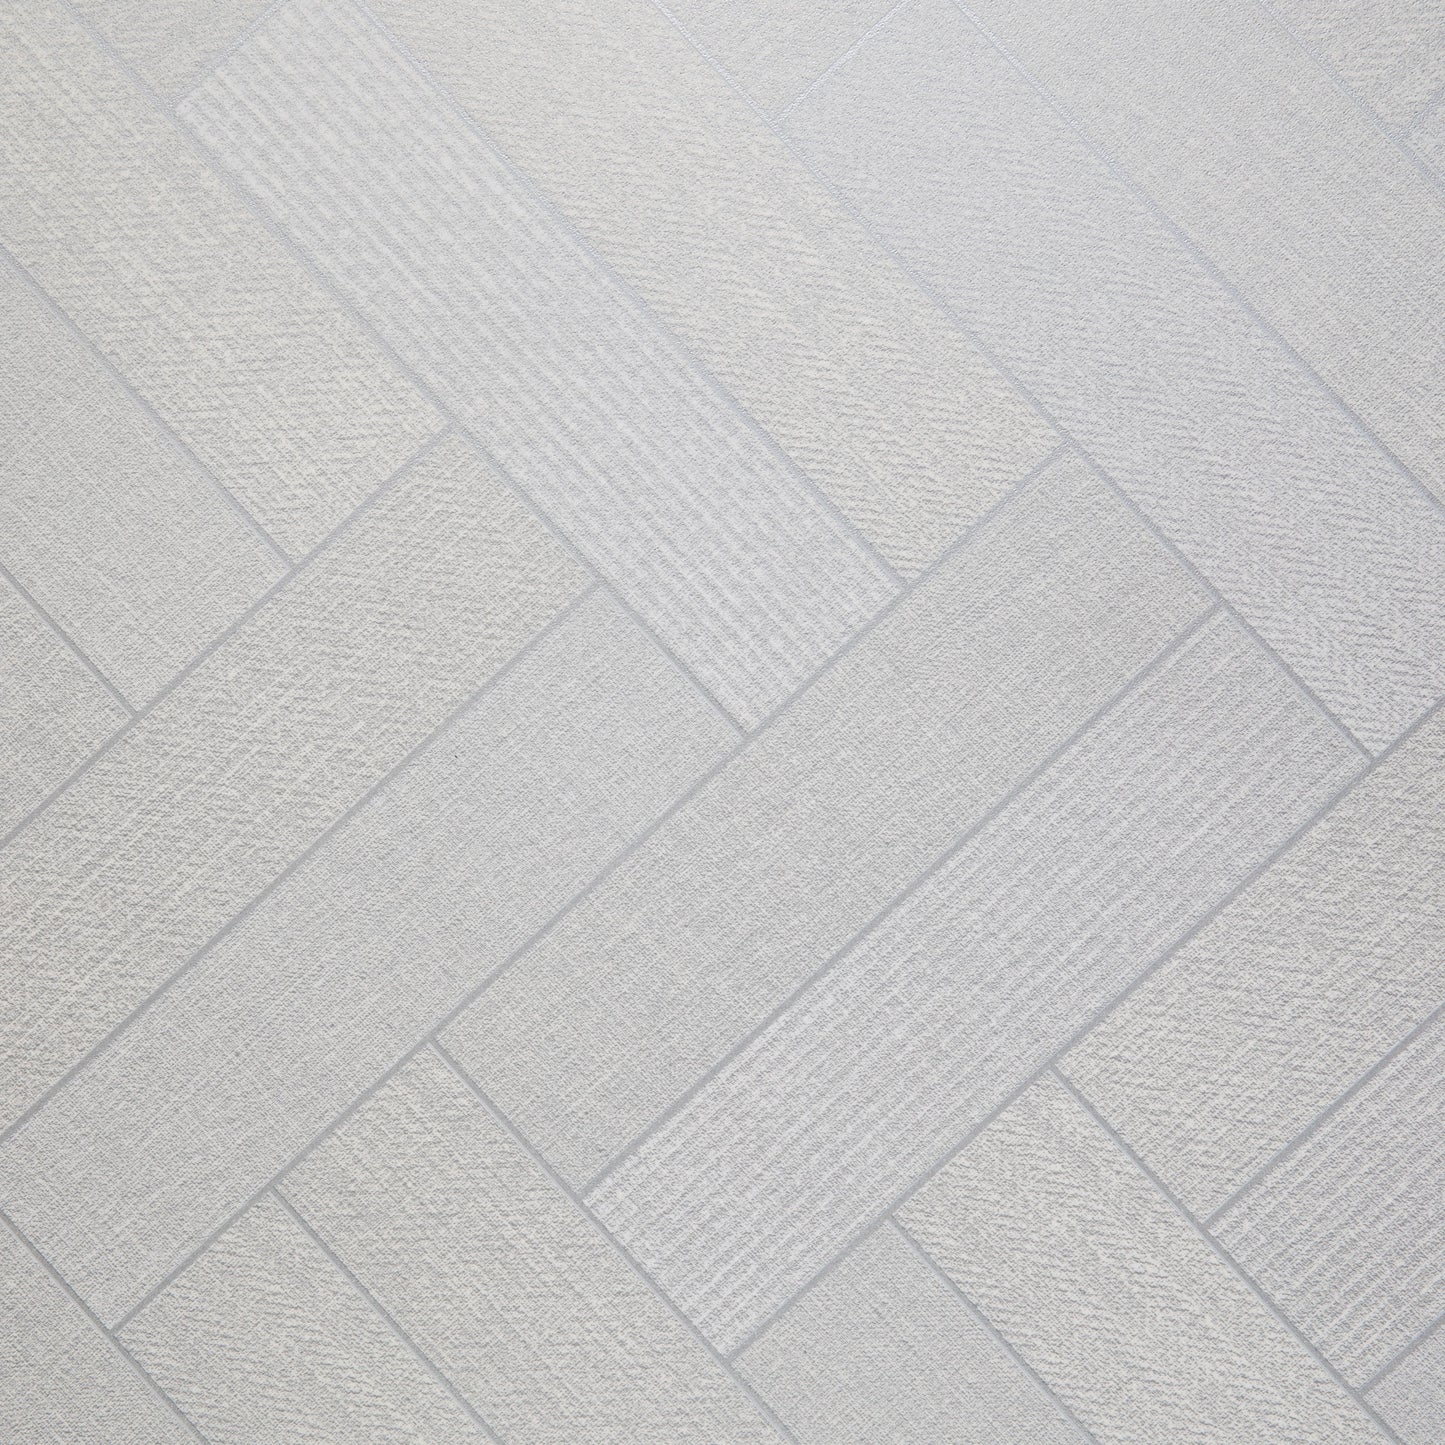 Flooring & Carpet  -  Mammoth Tile White Sheet Vinyl 3m  -  50152311